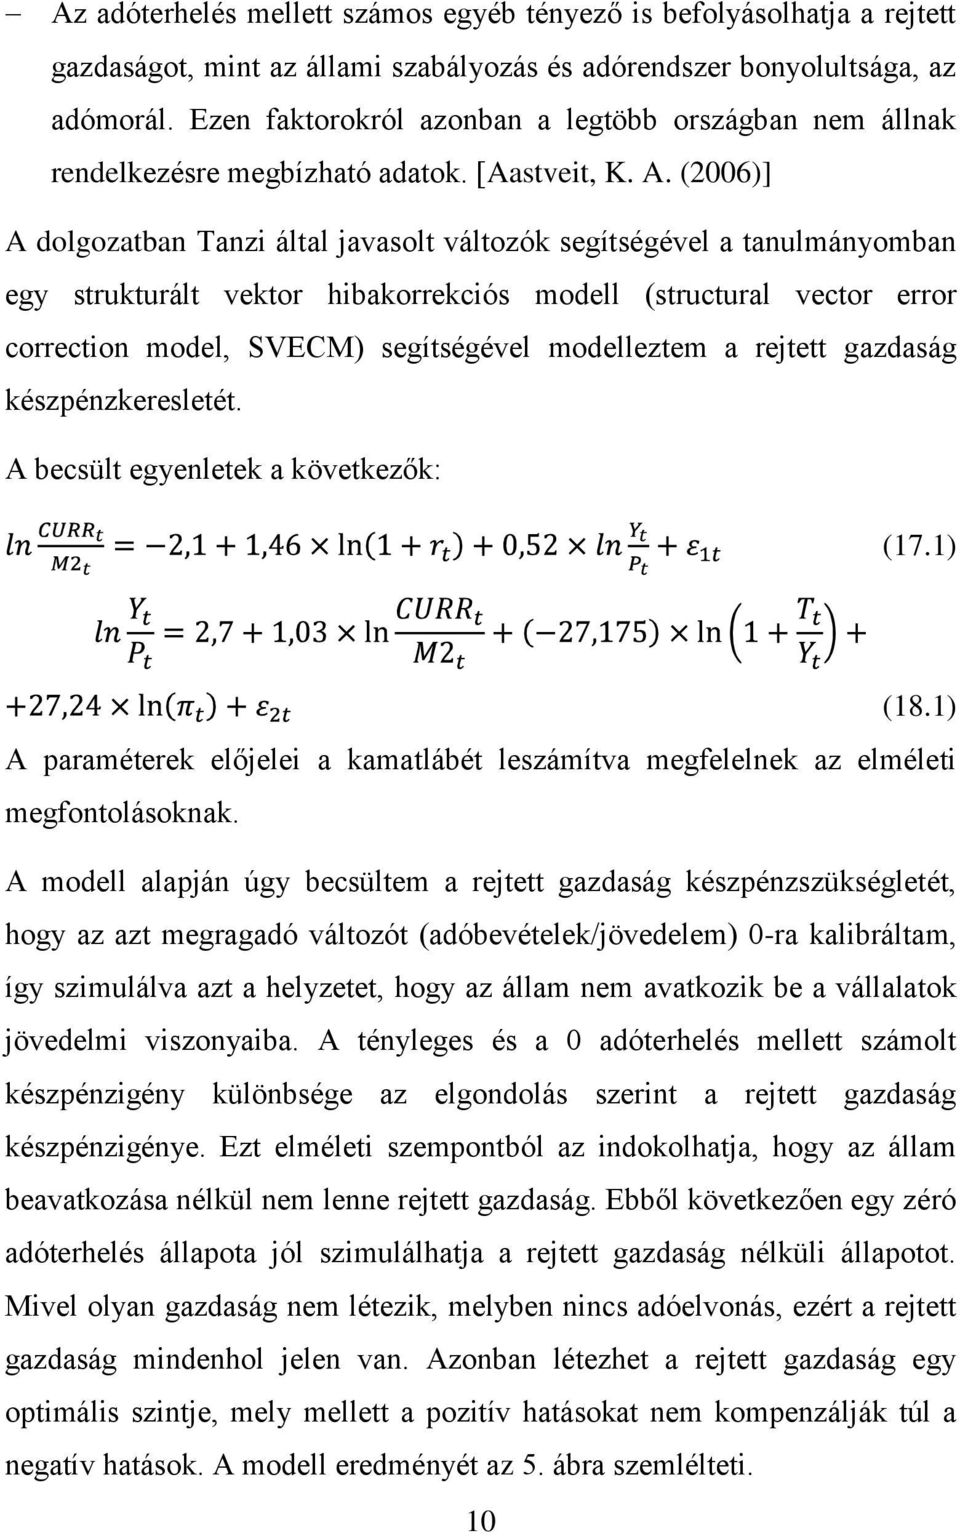 (2006)] A dolgozatban Tanzi által javasolt változók segítségével a tanulmányomban egy strukturált vektor hibakorrekciós modell (structural vector error correction model, SVECM) segítségével